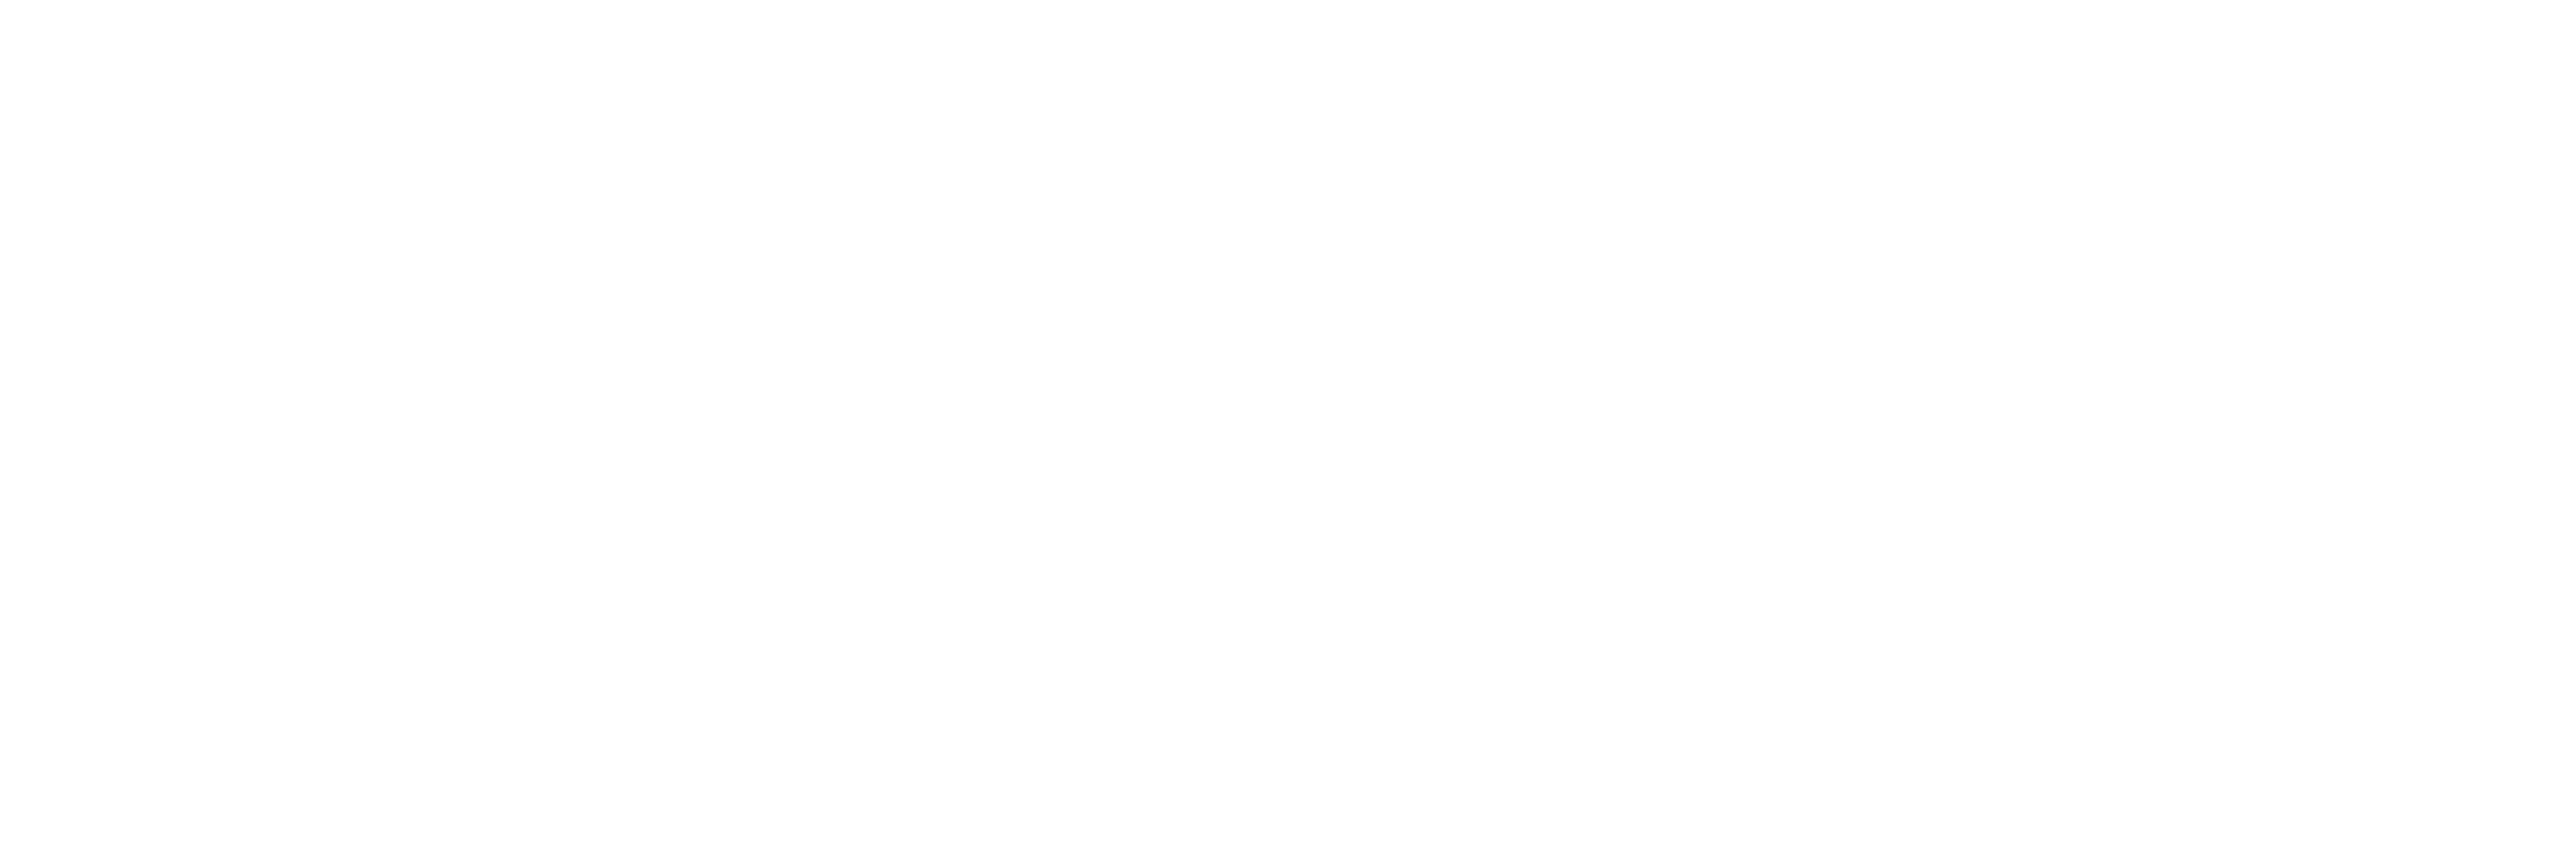 Monongahela Valley Hospital (MVH)